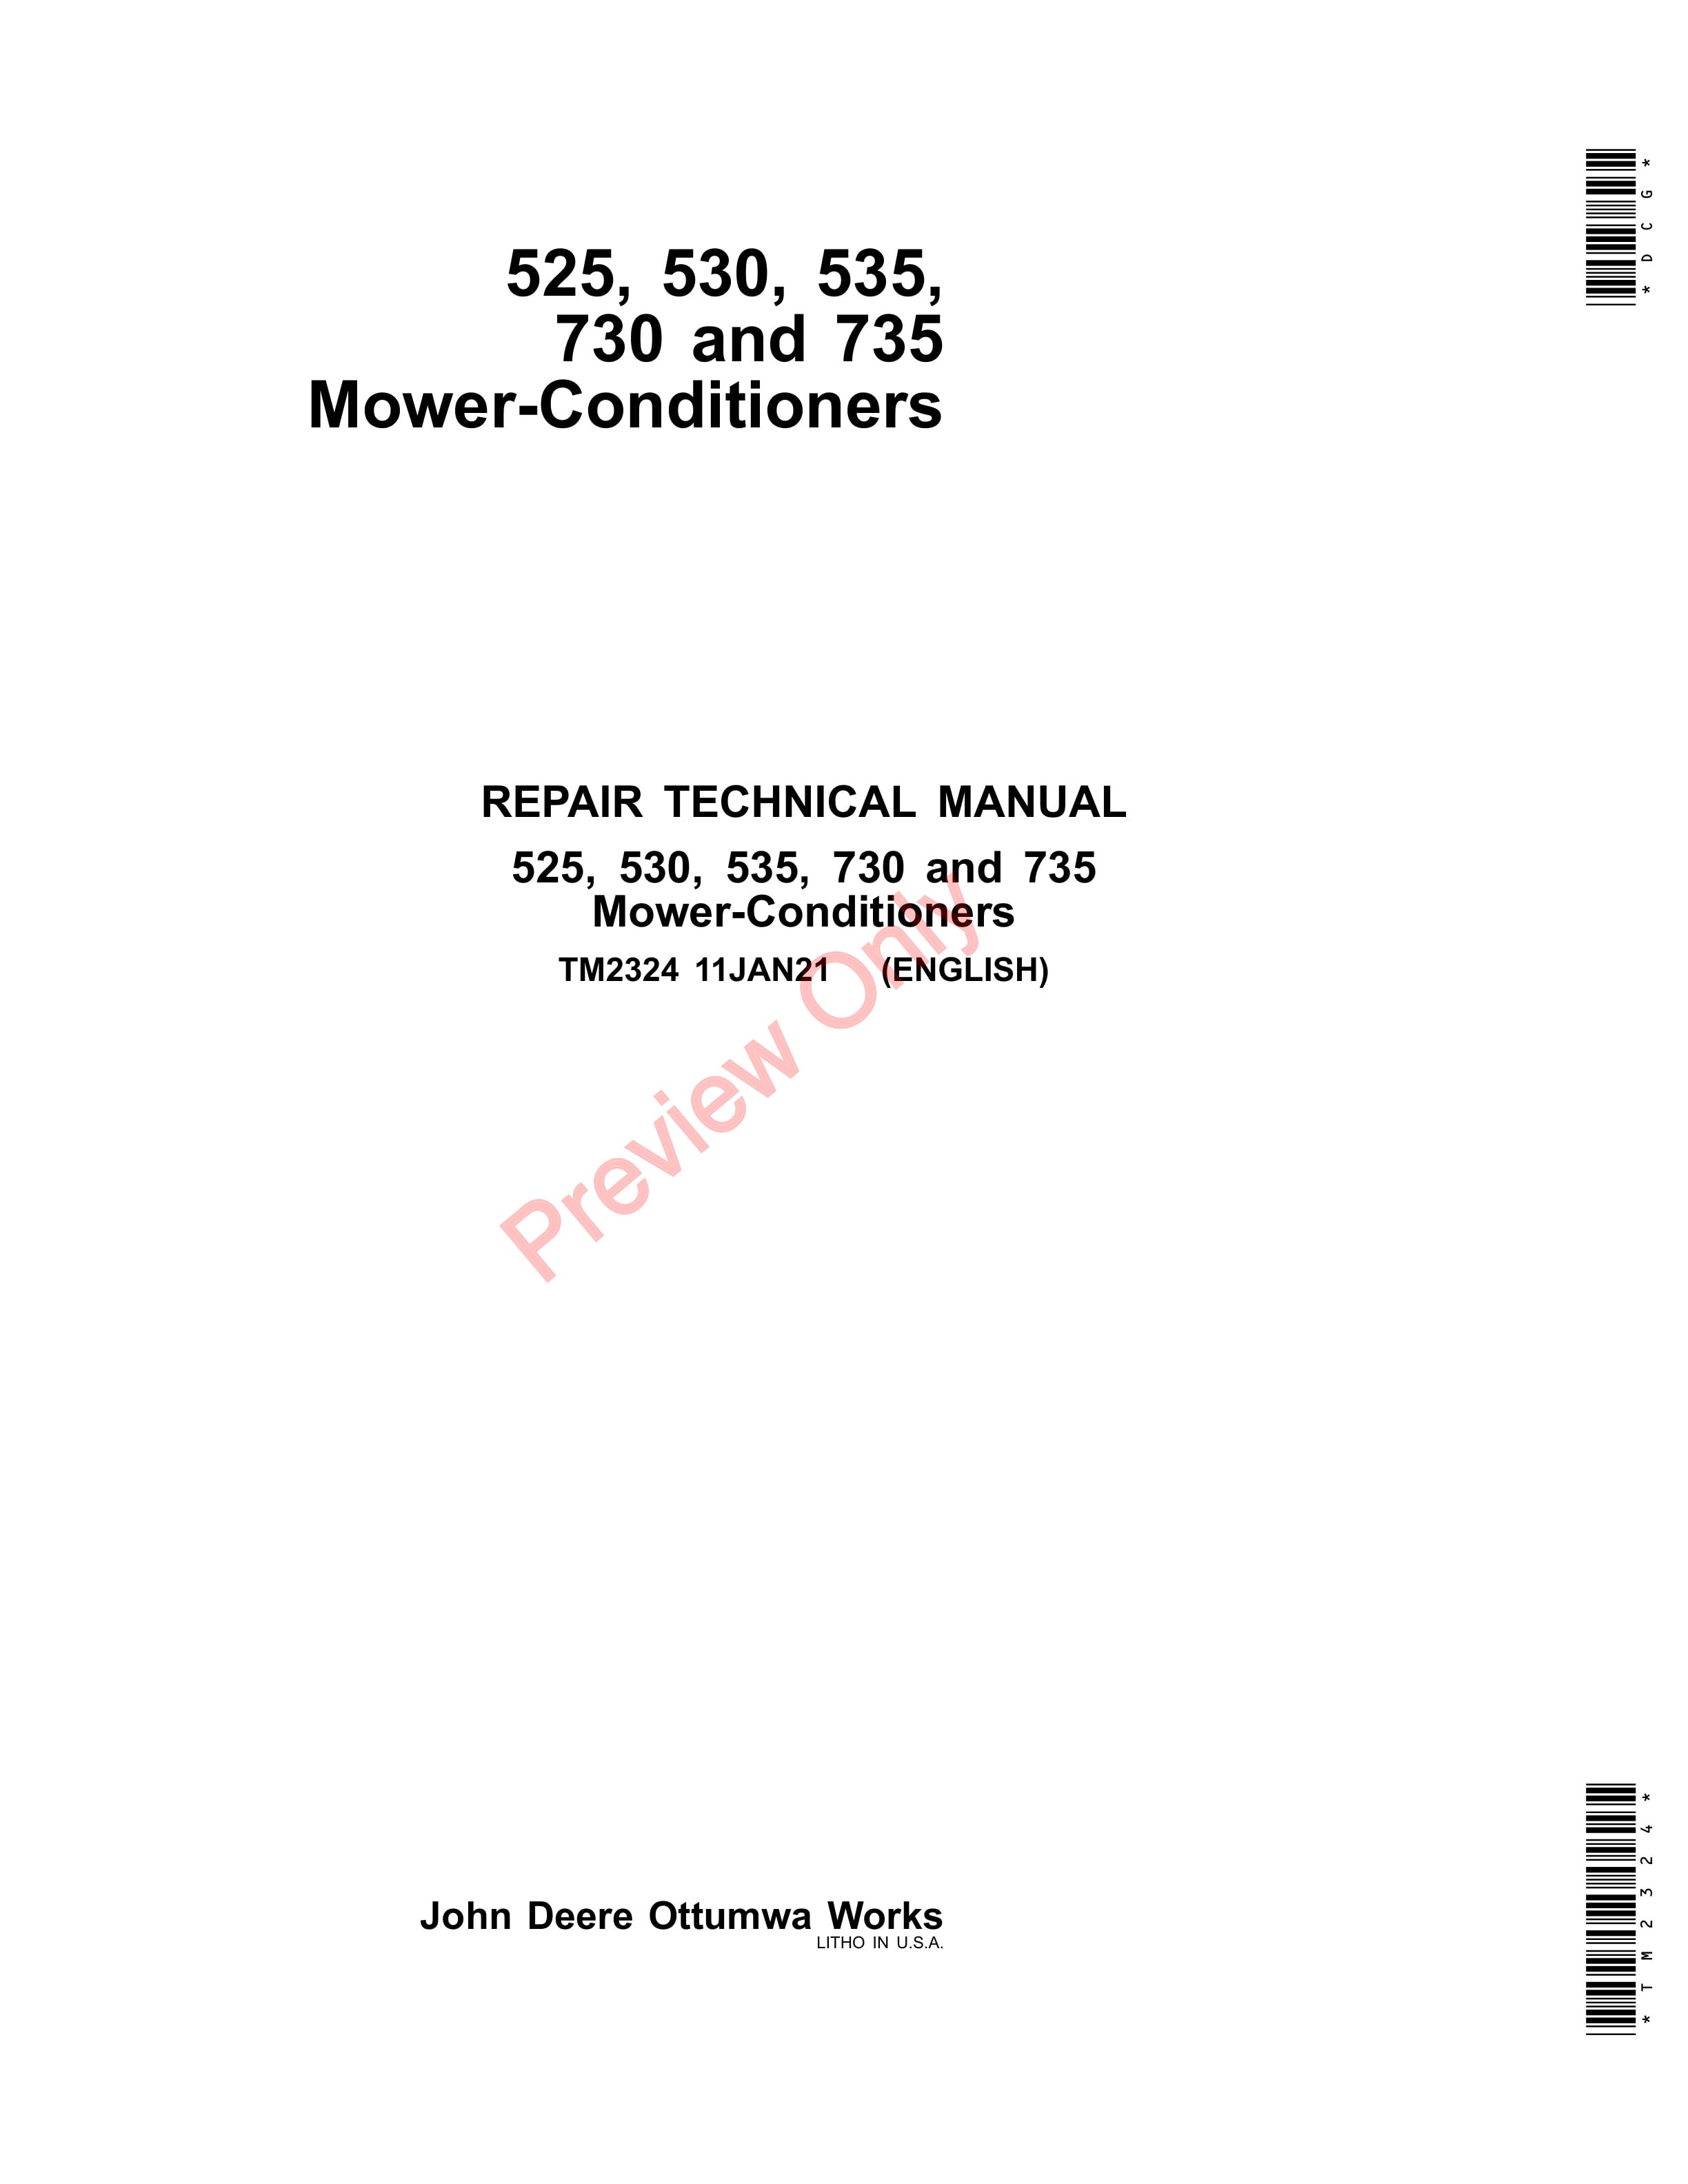 John Deere 525 530 535 730 and 735 Mower Conditioners Repair Technical Manual TM2324 11JAN21 1